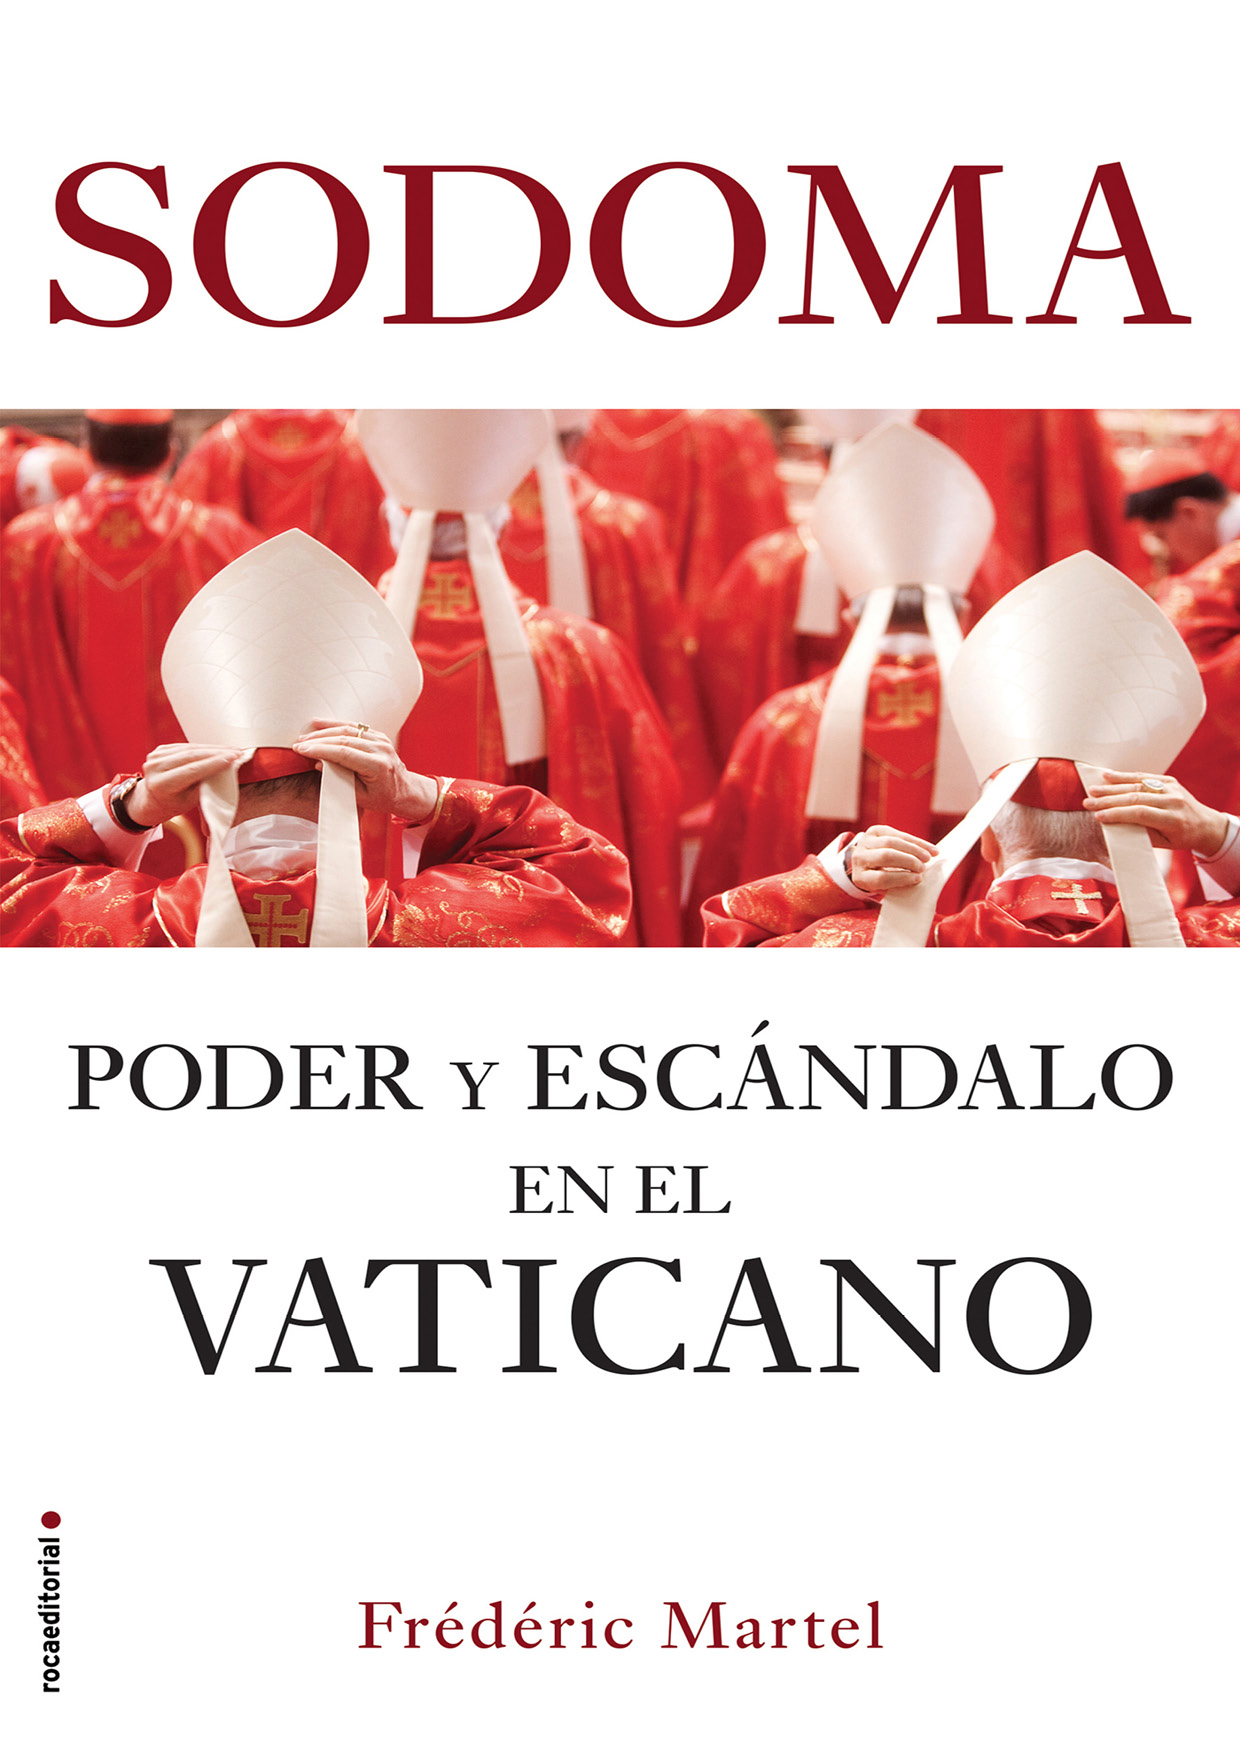 Sodoma Poder y escándalo en el Vaticano - image 1